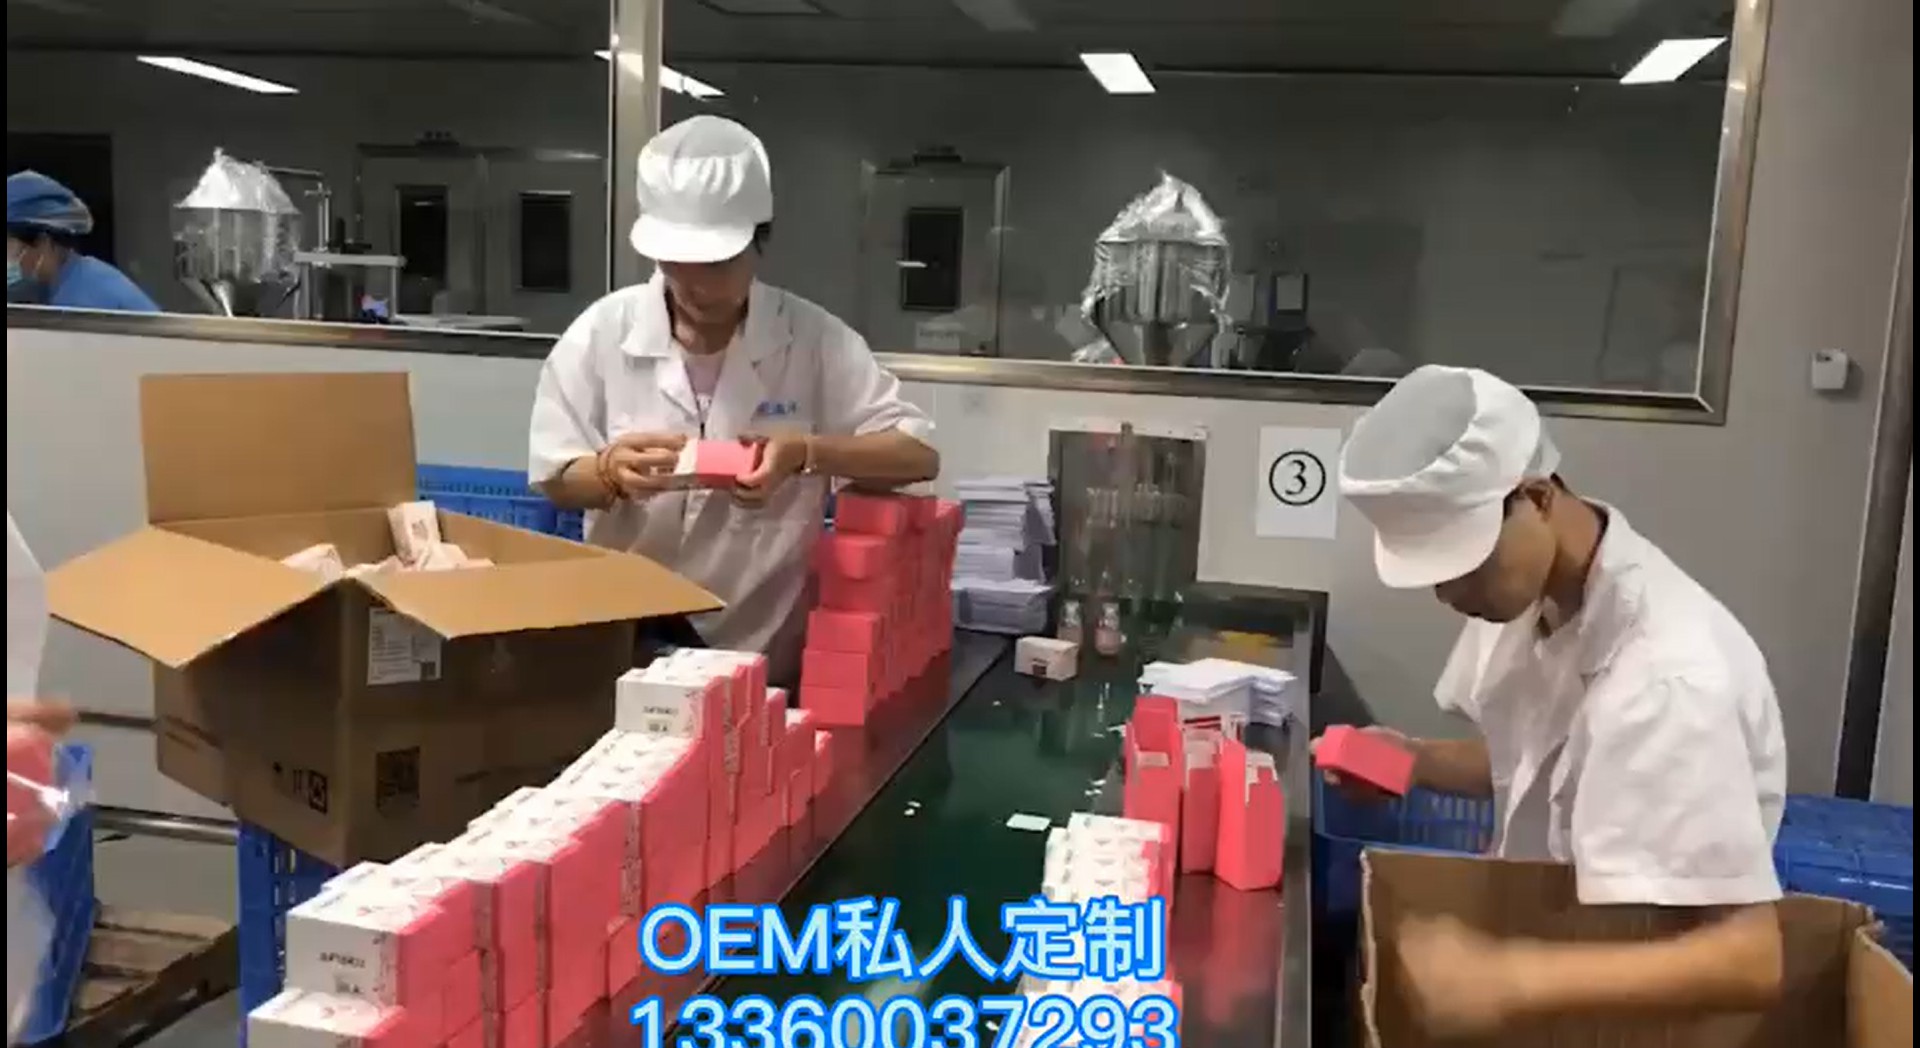 مصنع هلام التزليق الطبية المصنعة في الصين زيوت التشحيم الشخصية Cokelife